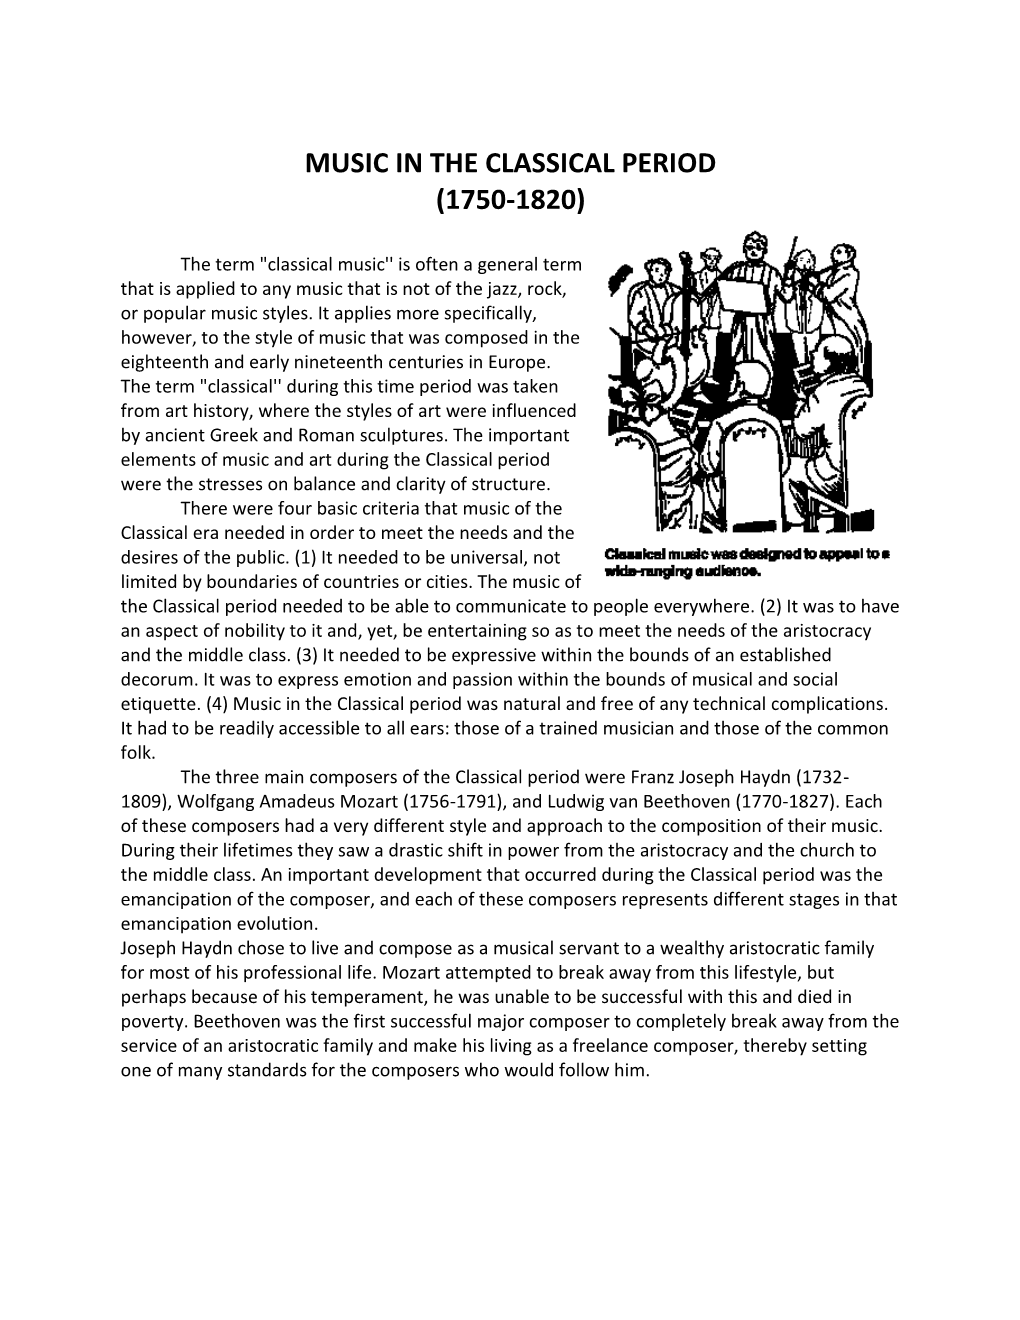 Music in the Classical Period (1750-1820)